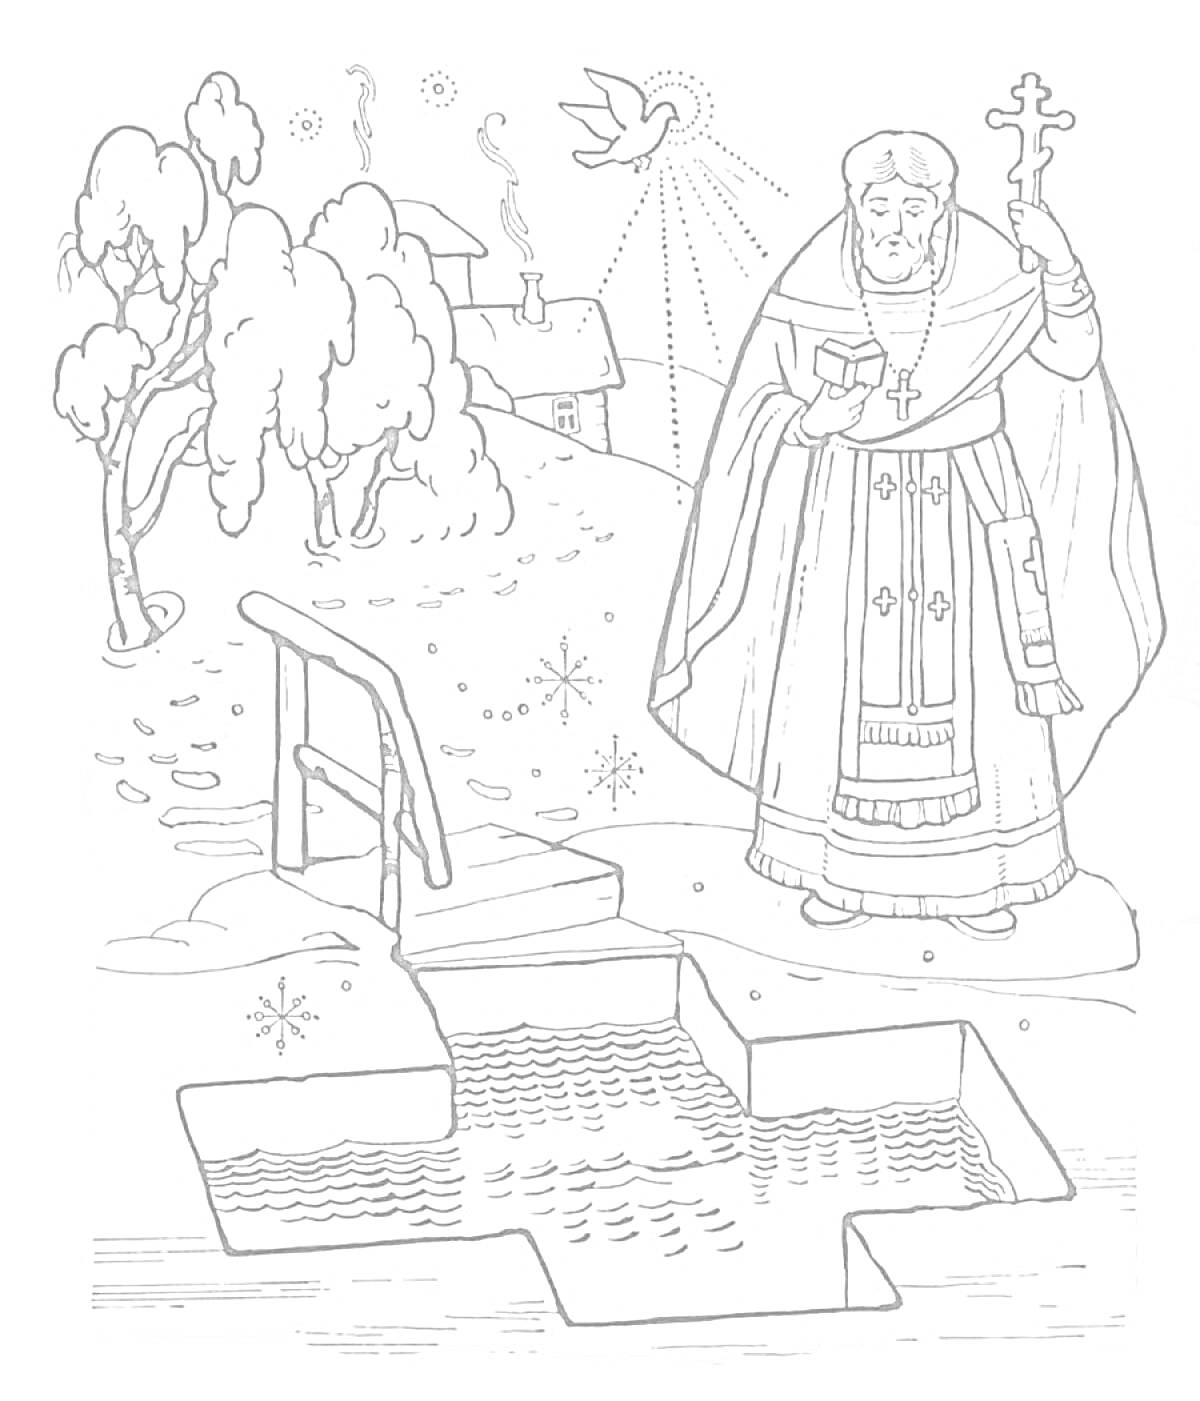 Раскраска Священник с крестом у проруби для крещения на фоне зимнего пейзажа